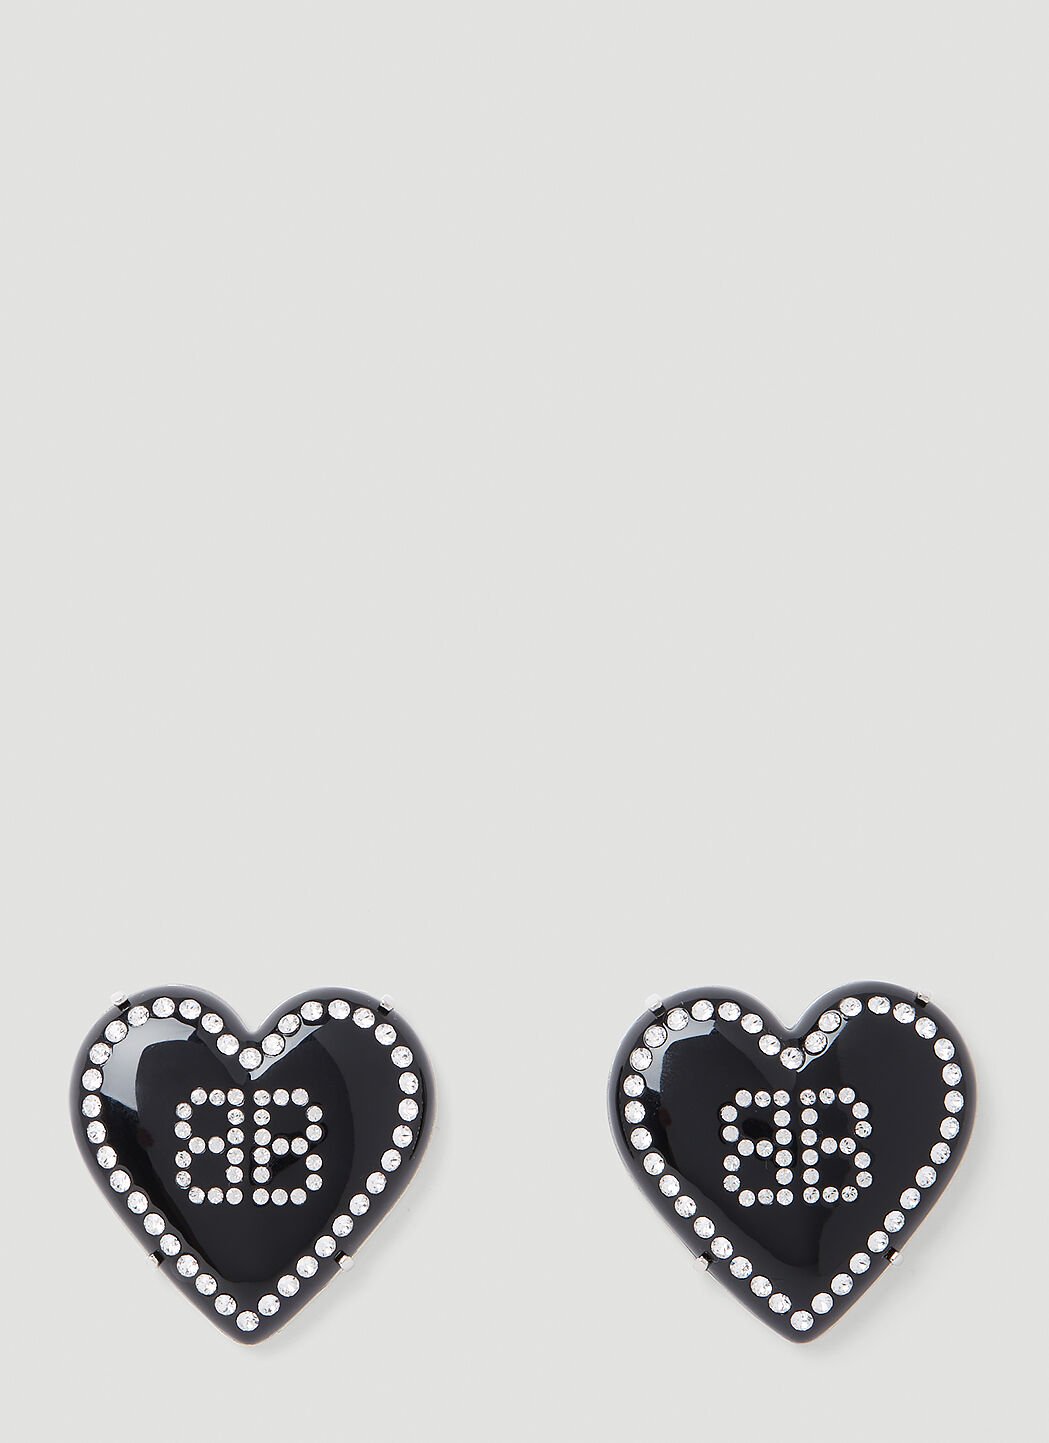 Dries Van Noten Heart Logo Earrings Gold dvn0254041